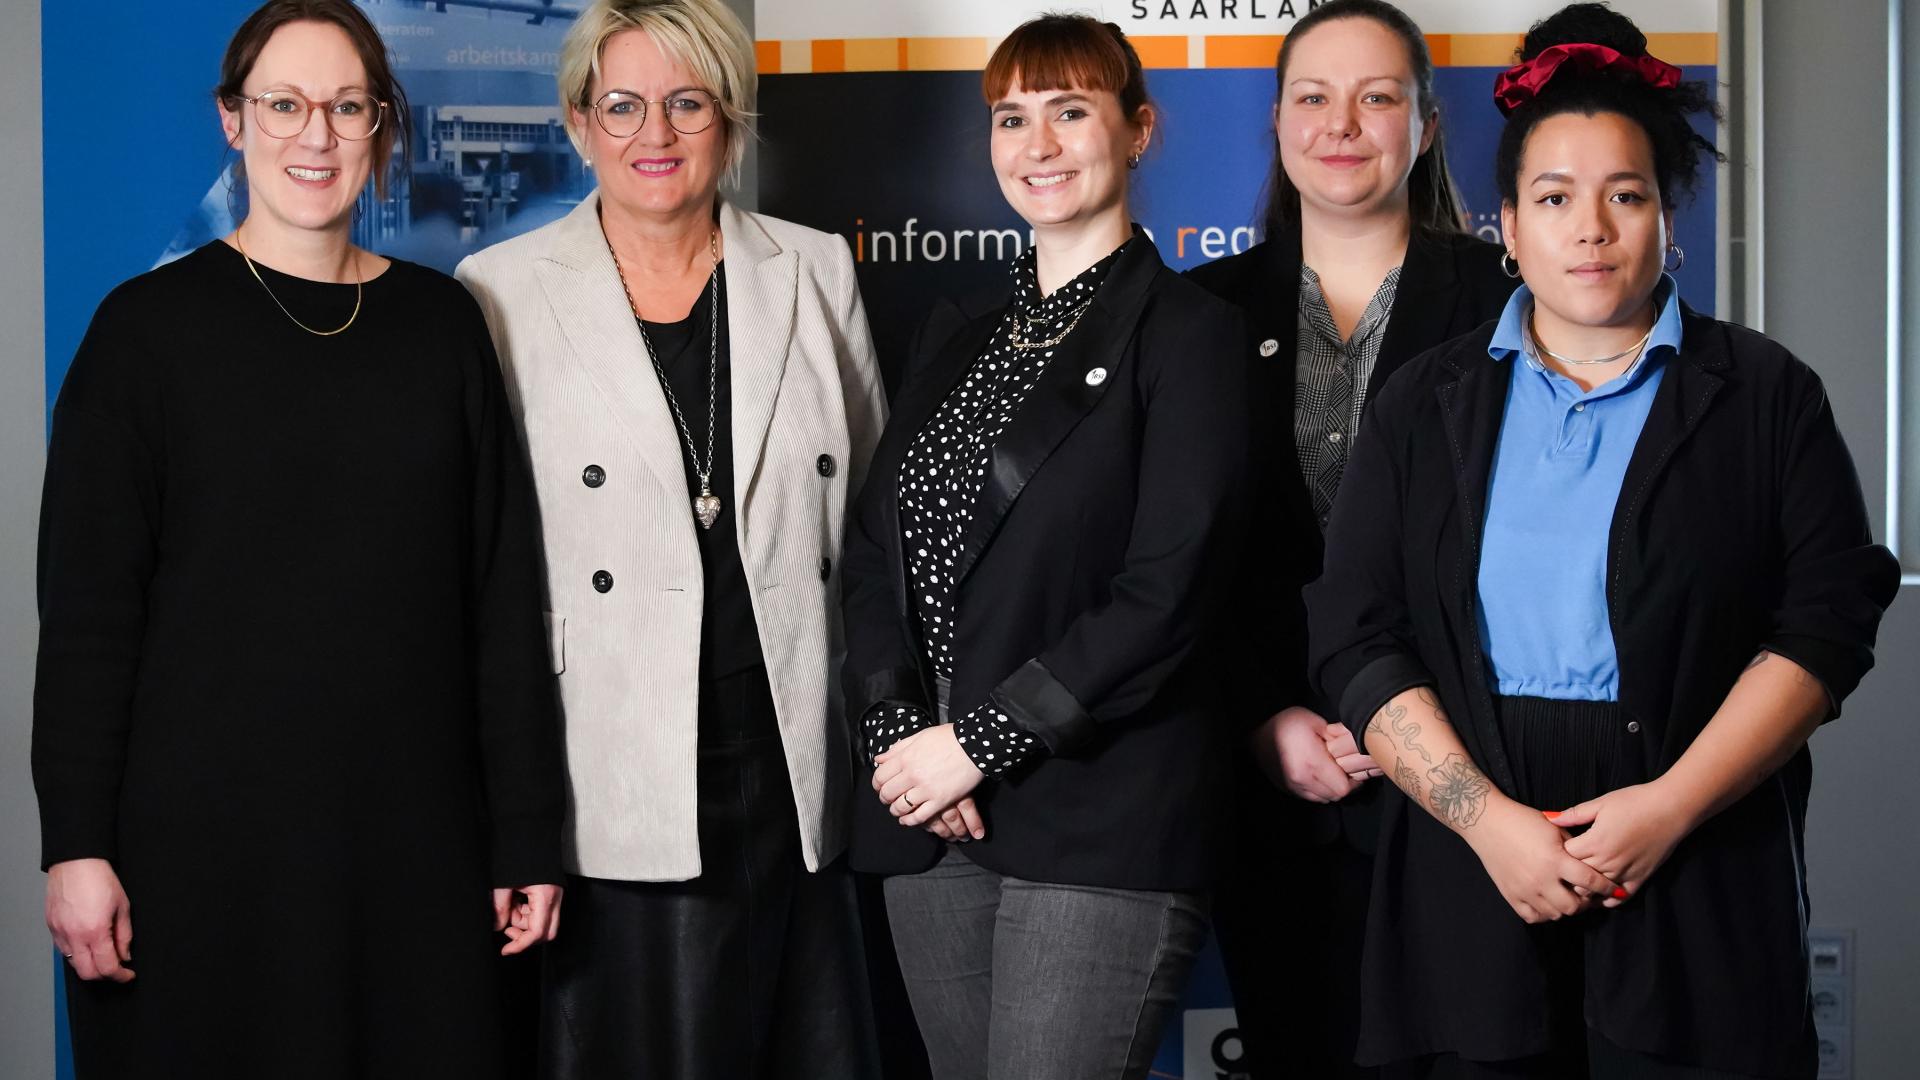 Melanie Blatter (Arbeitskammer des Saarlandes), Ruth Meyer (LMS), Carola Plesch und Veronika Lazar (BSI), Michelle Pantke (Amadeu Antonio Stiftung)